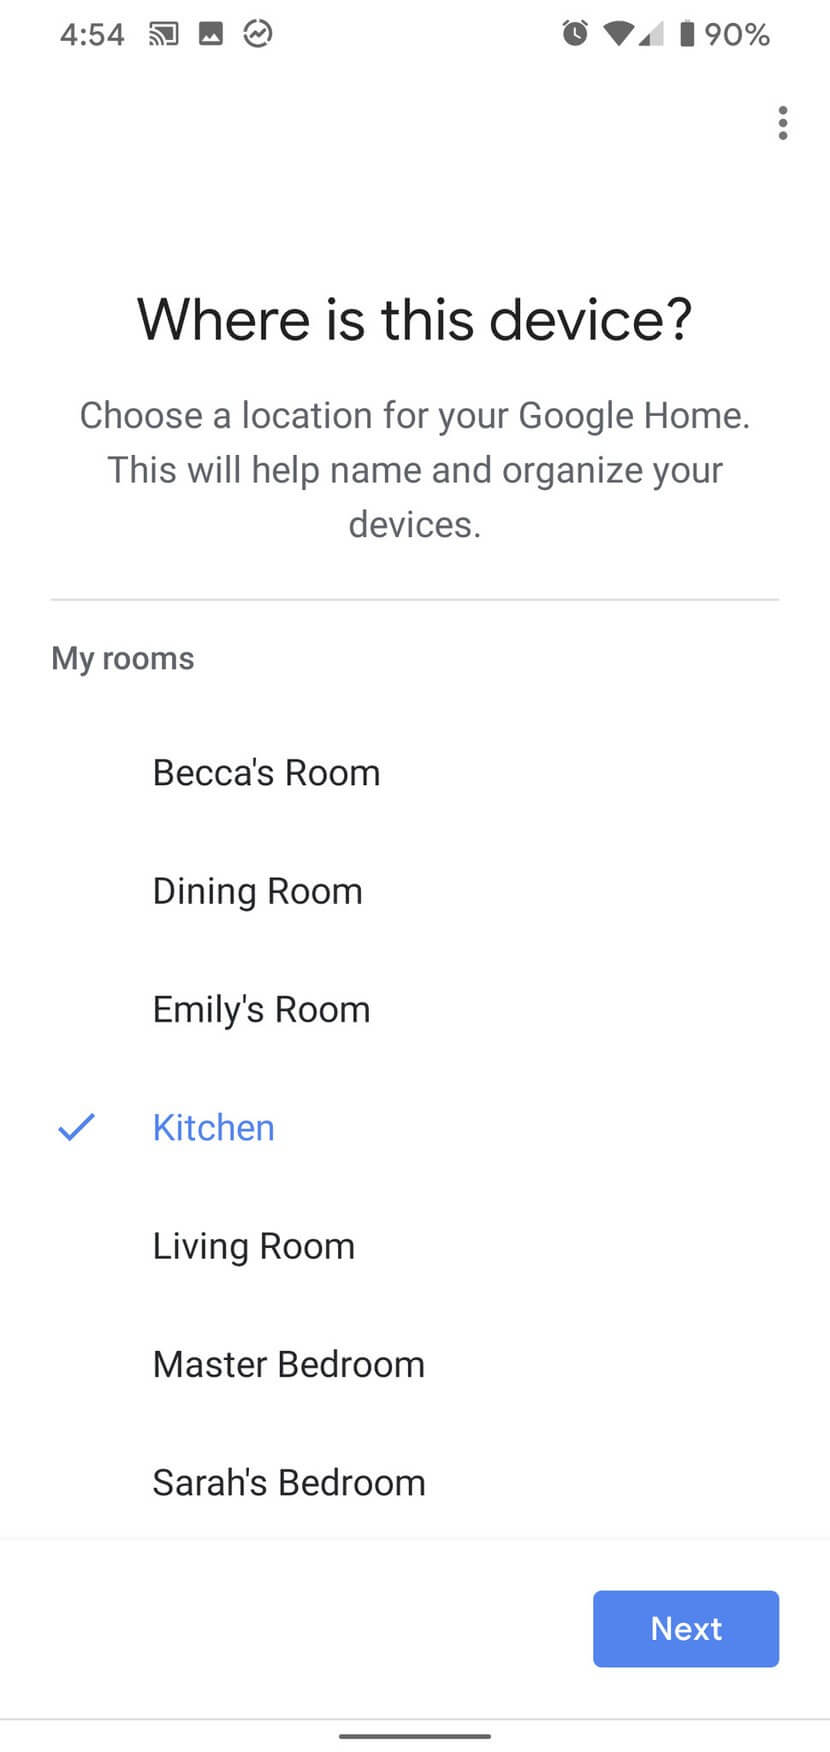 Chọn phòng đặt loa Google Home